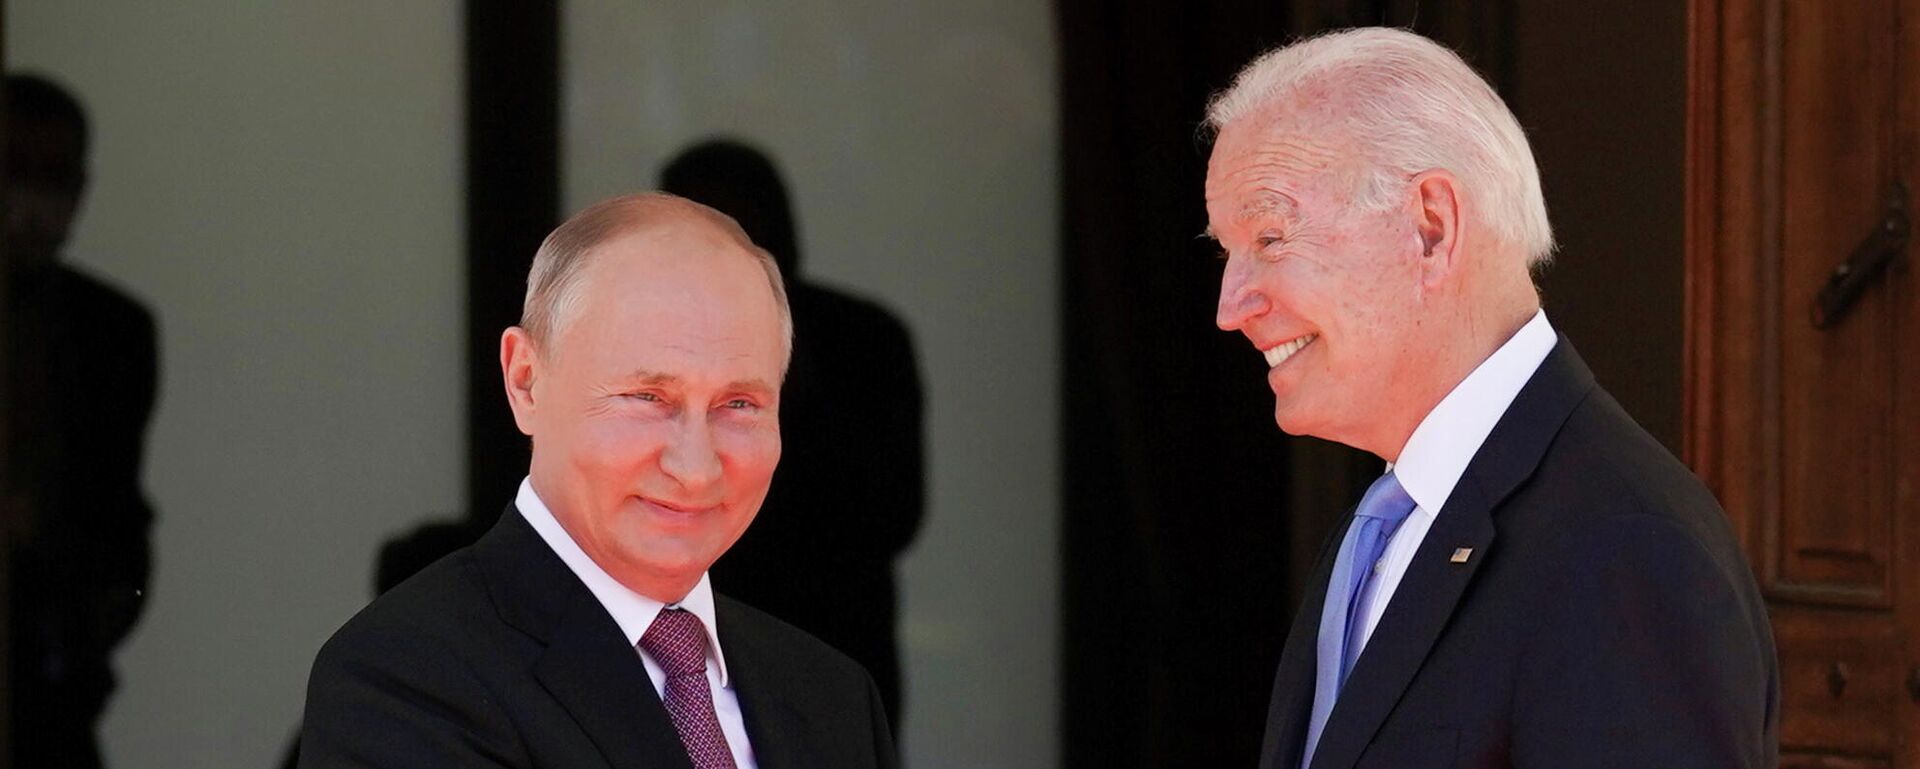 Vladímir Putin, presidente de Rusia, y Joe Biden, presidente de EEUU - Sputnik Mundo, 1920, 09.07.2021